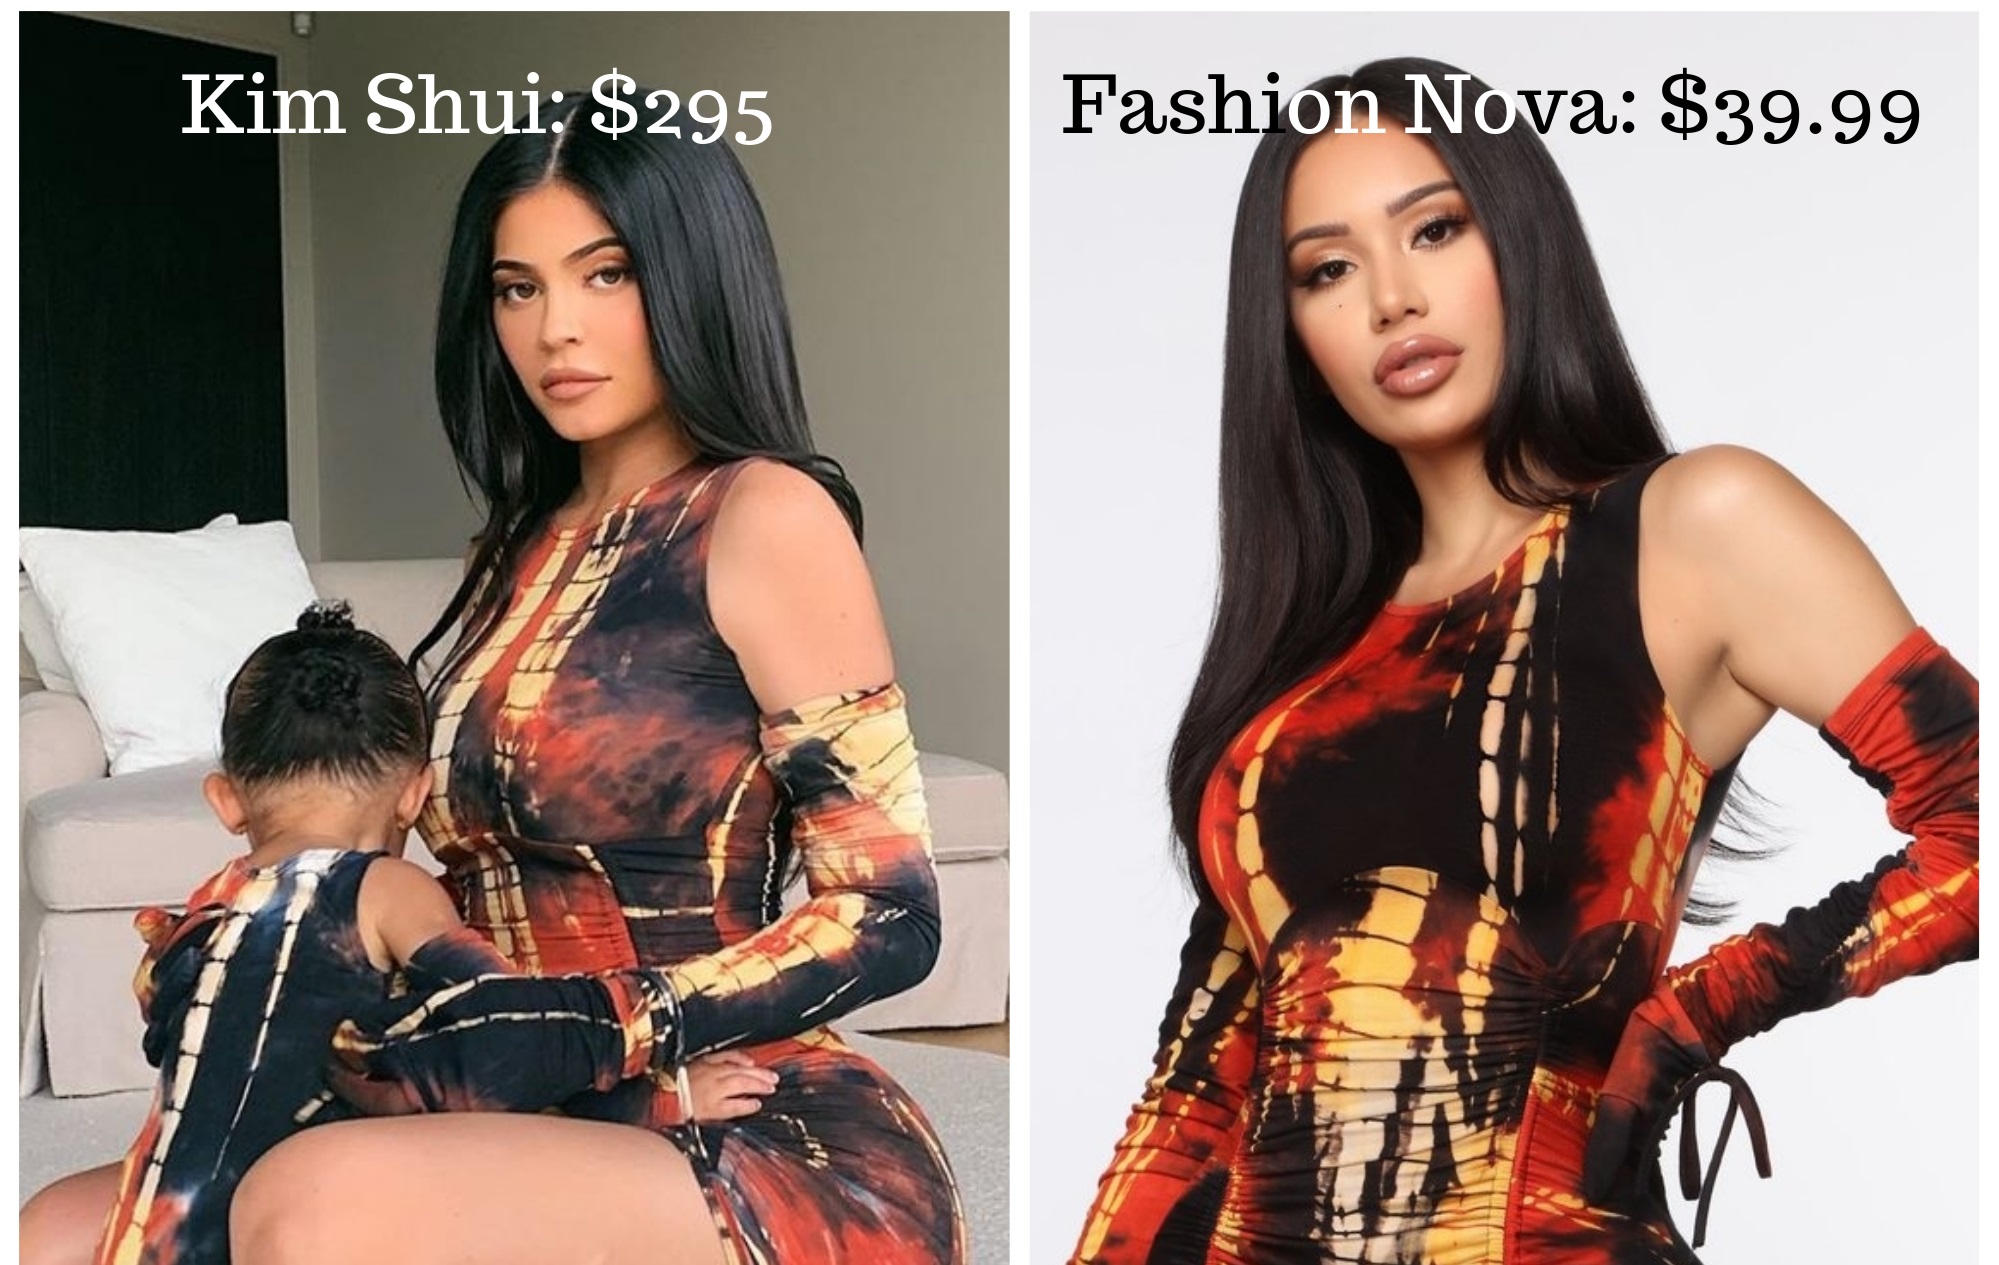 Fashion Nova Copies Kim Shui Dress ...